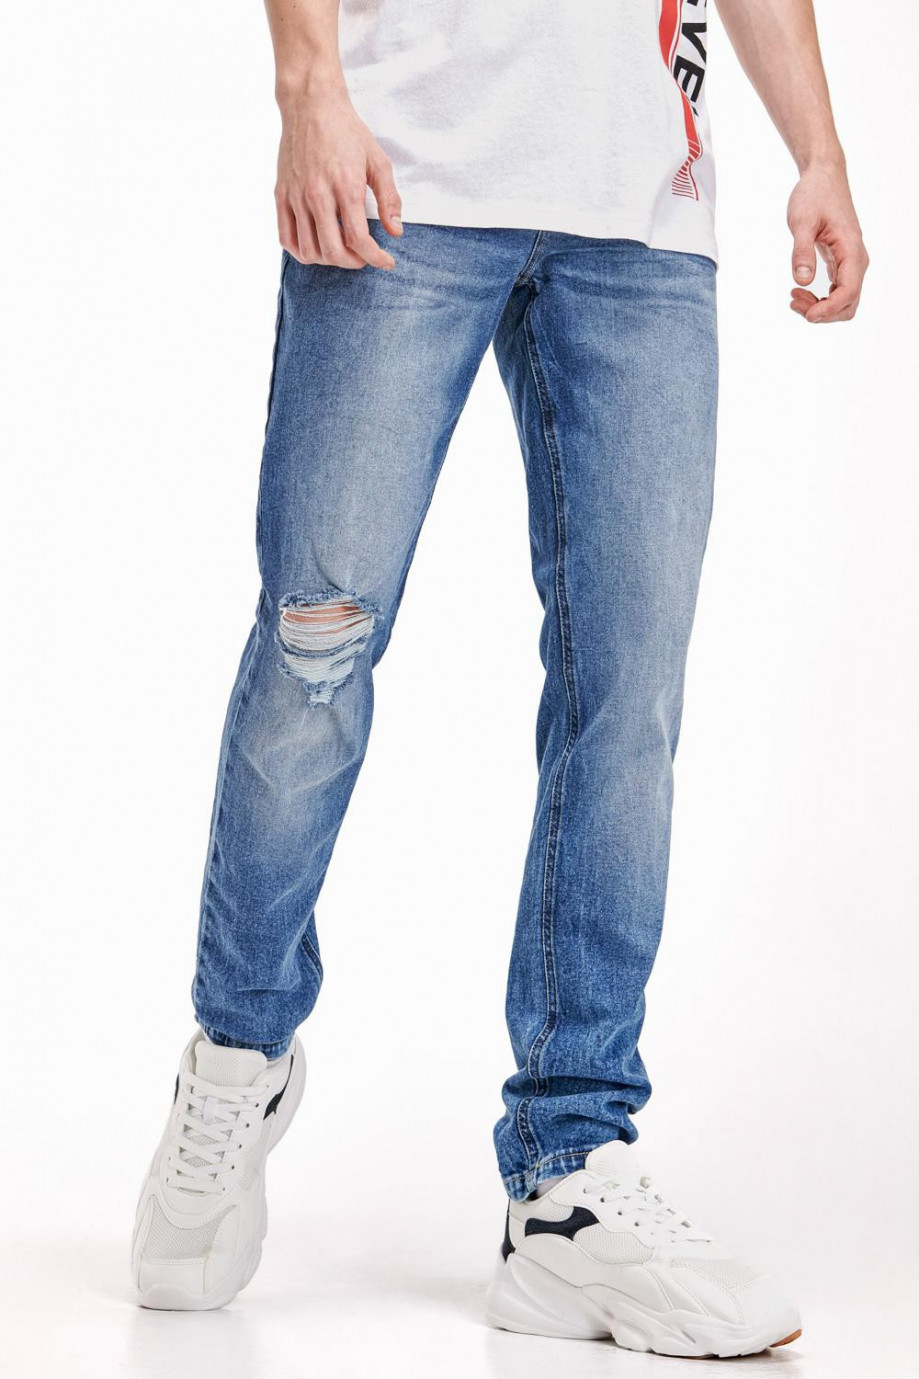 Jean azul medio súper skinny con roto en rodilla derecha